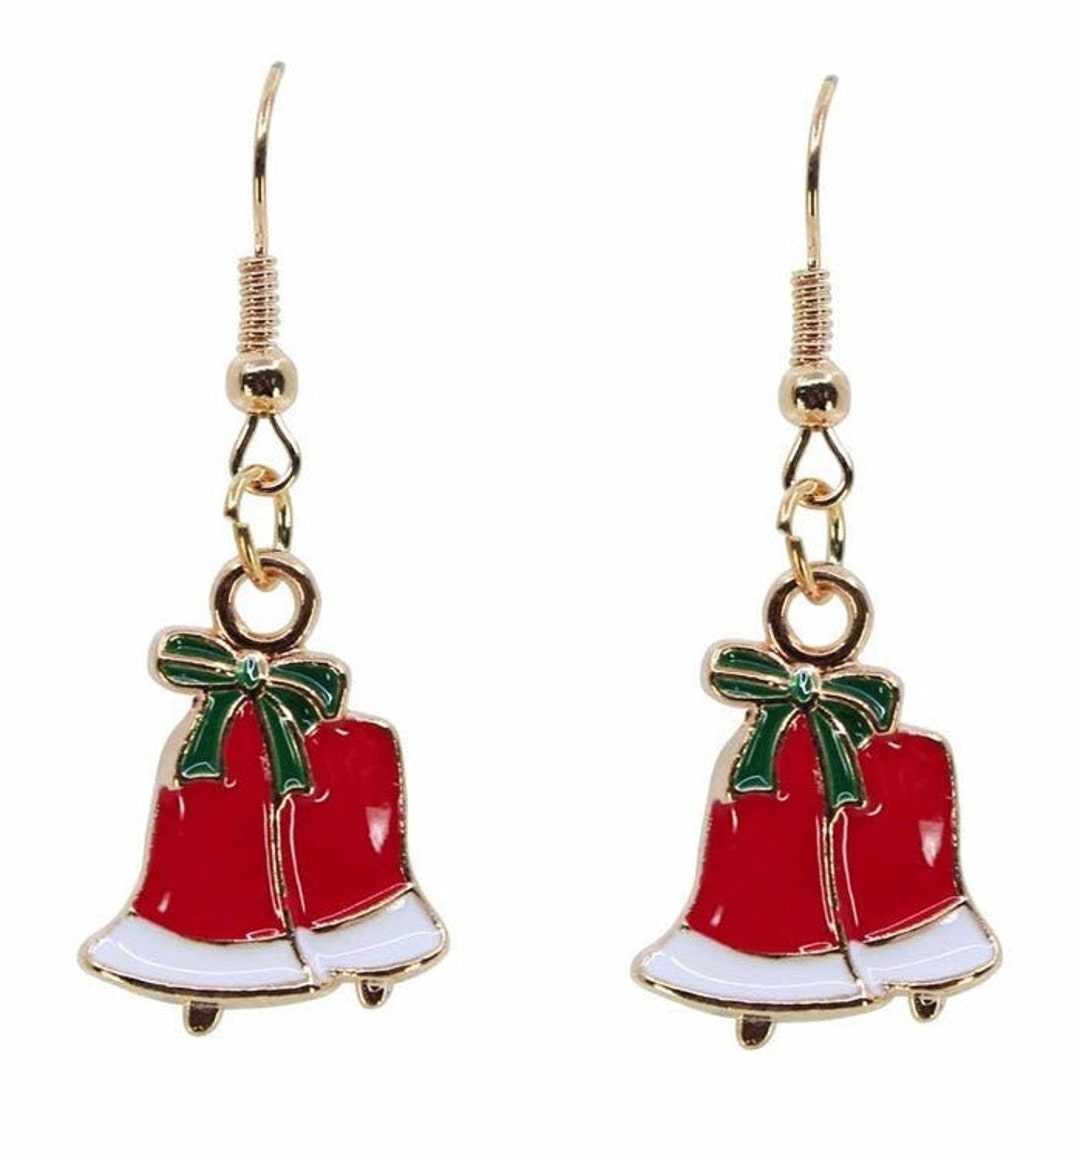 Christmas Flurries Earring Kit – Nostalgica